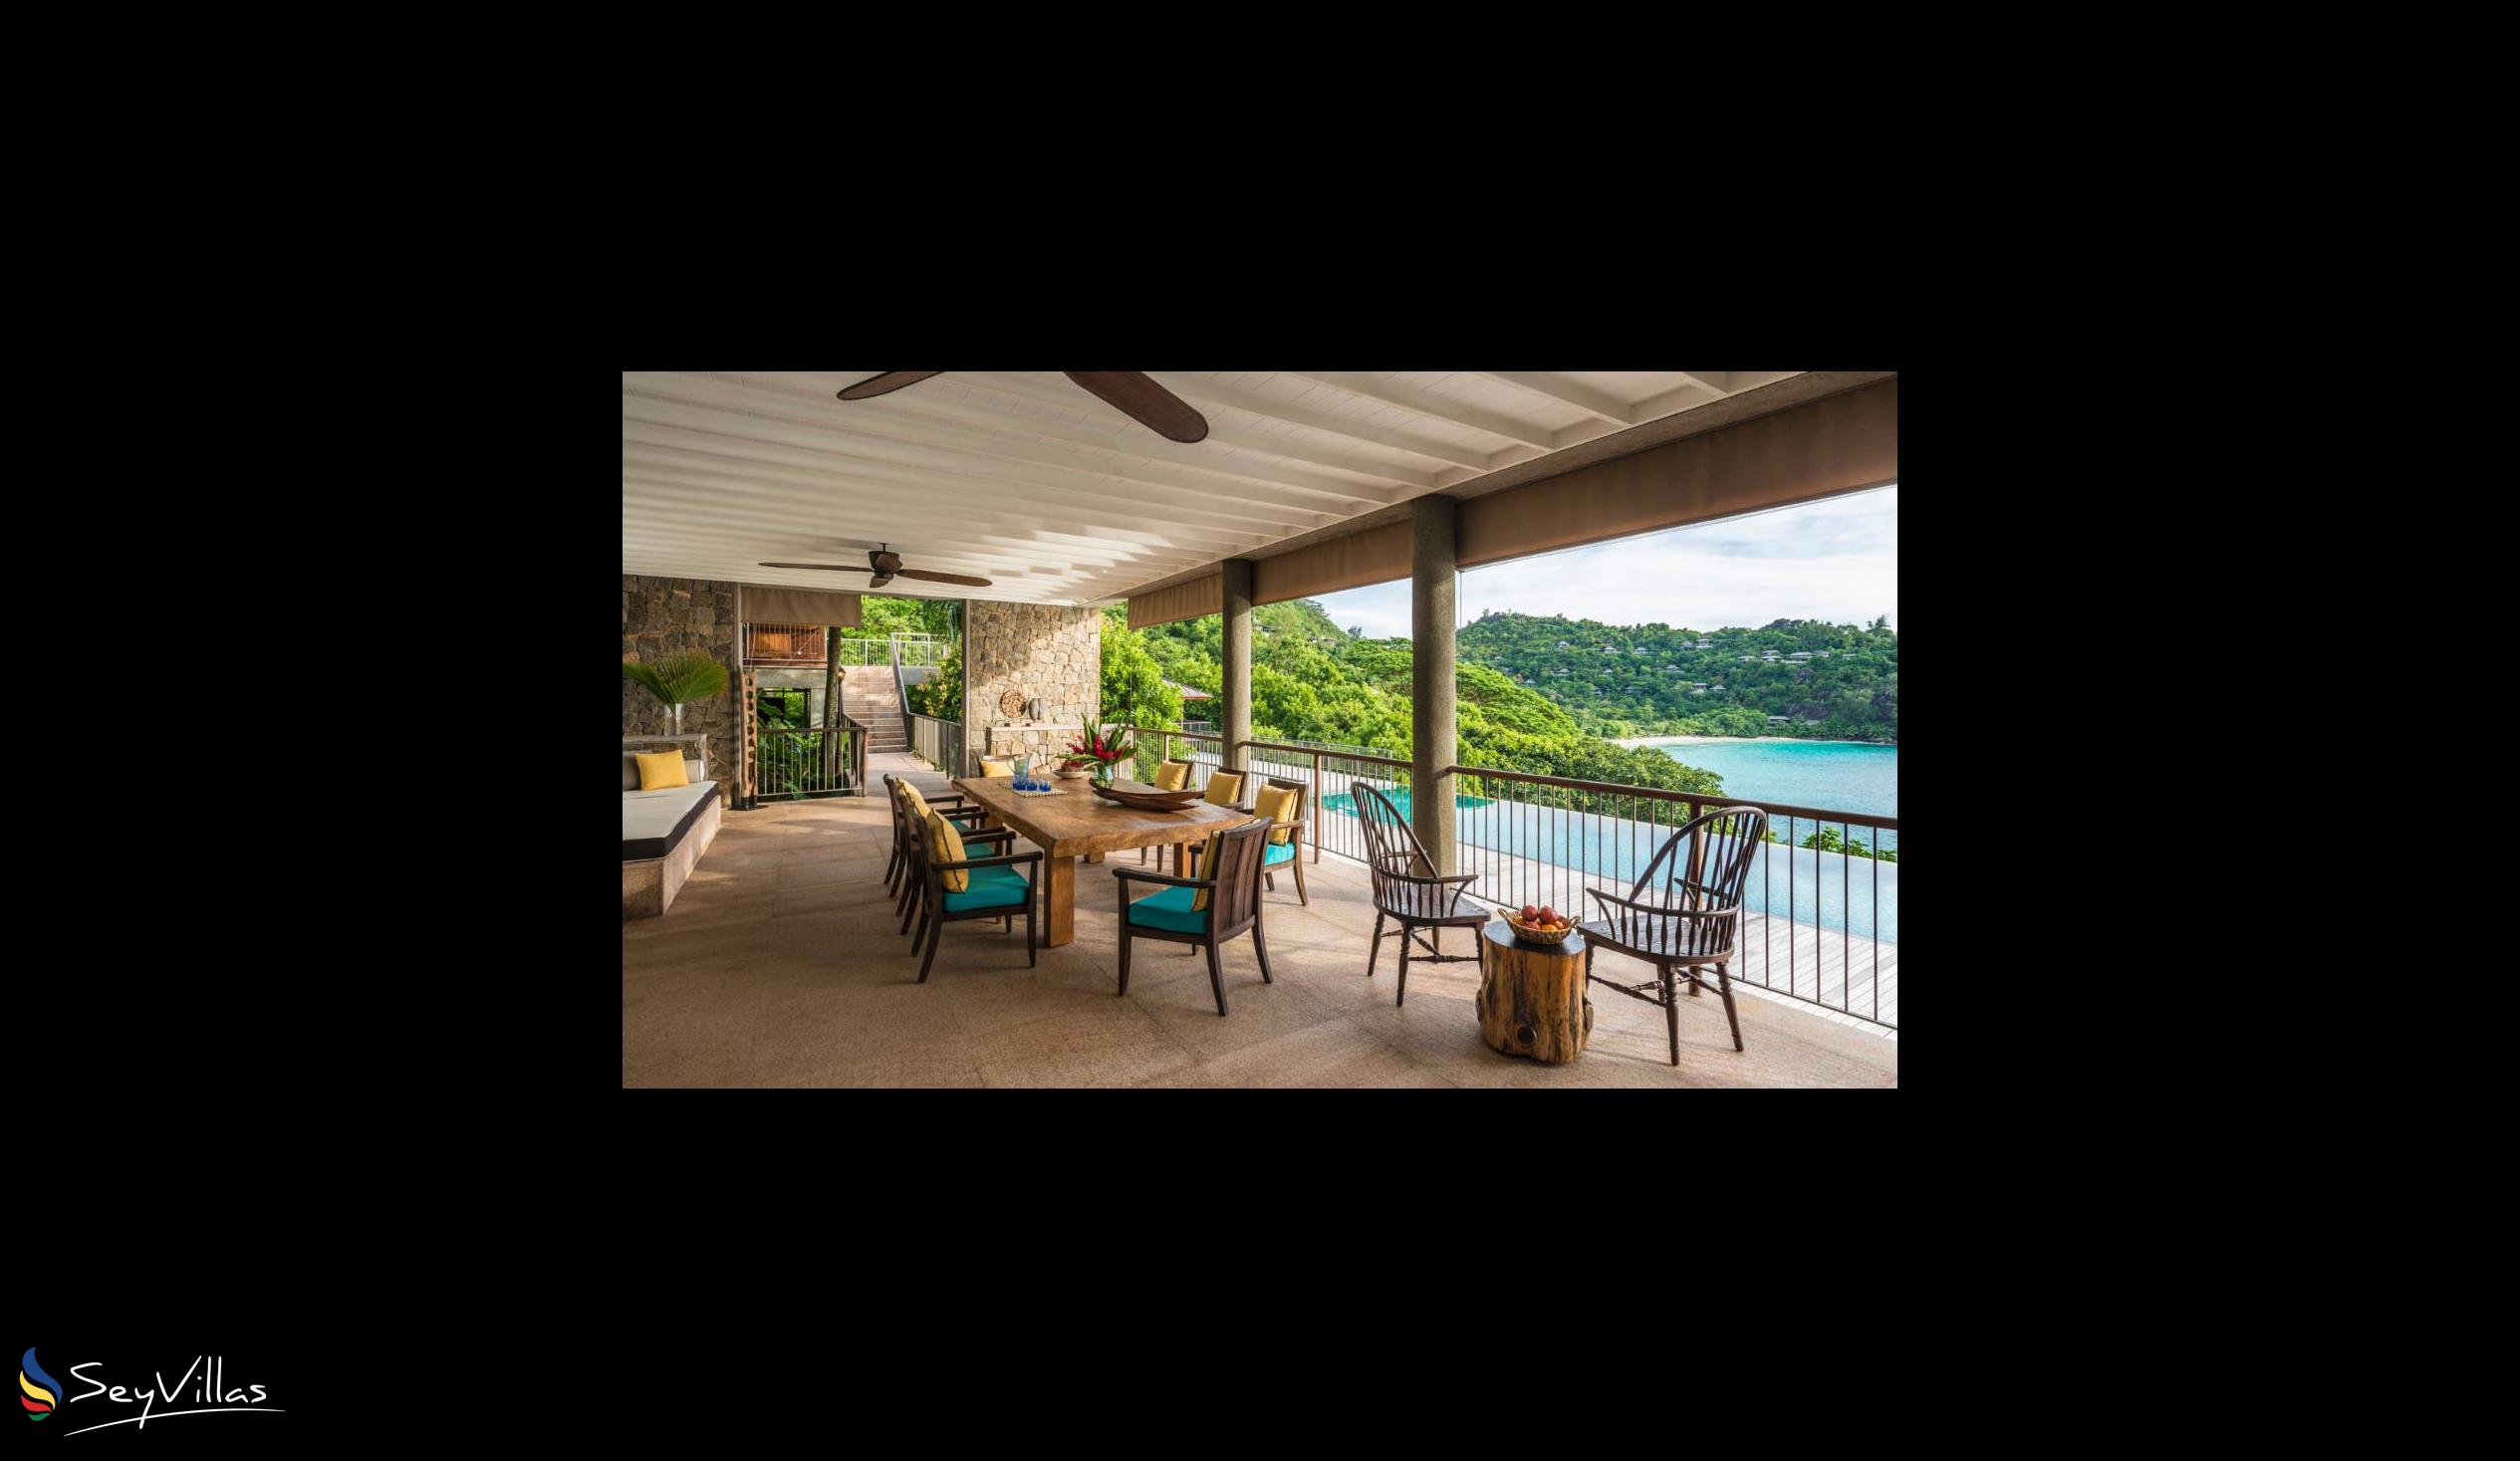 Foto 68: Four Seasons Resort - 4-Bedroom Residence Villa - Mahé (Seychelles)